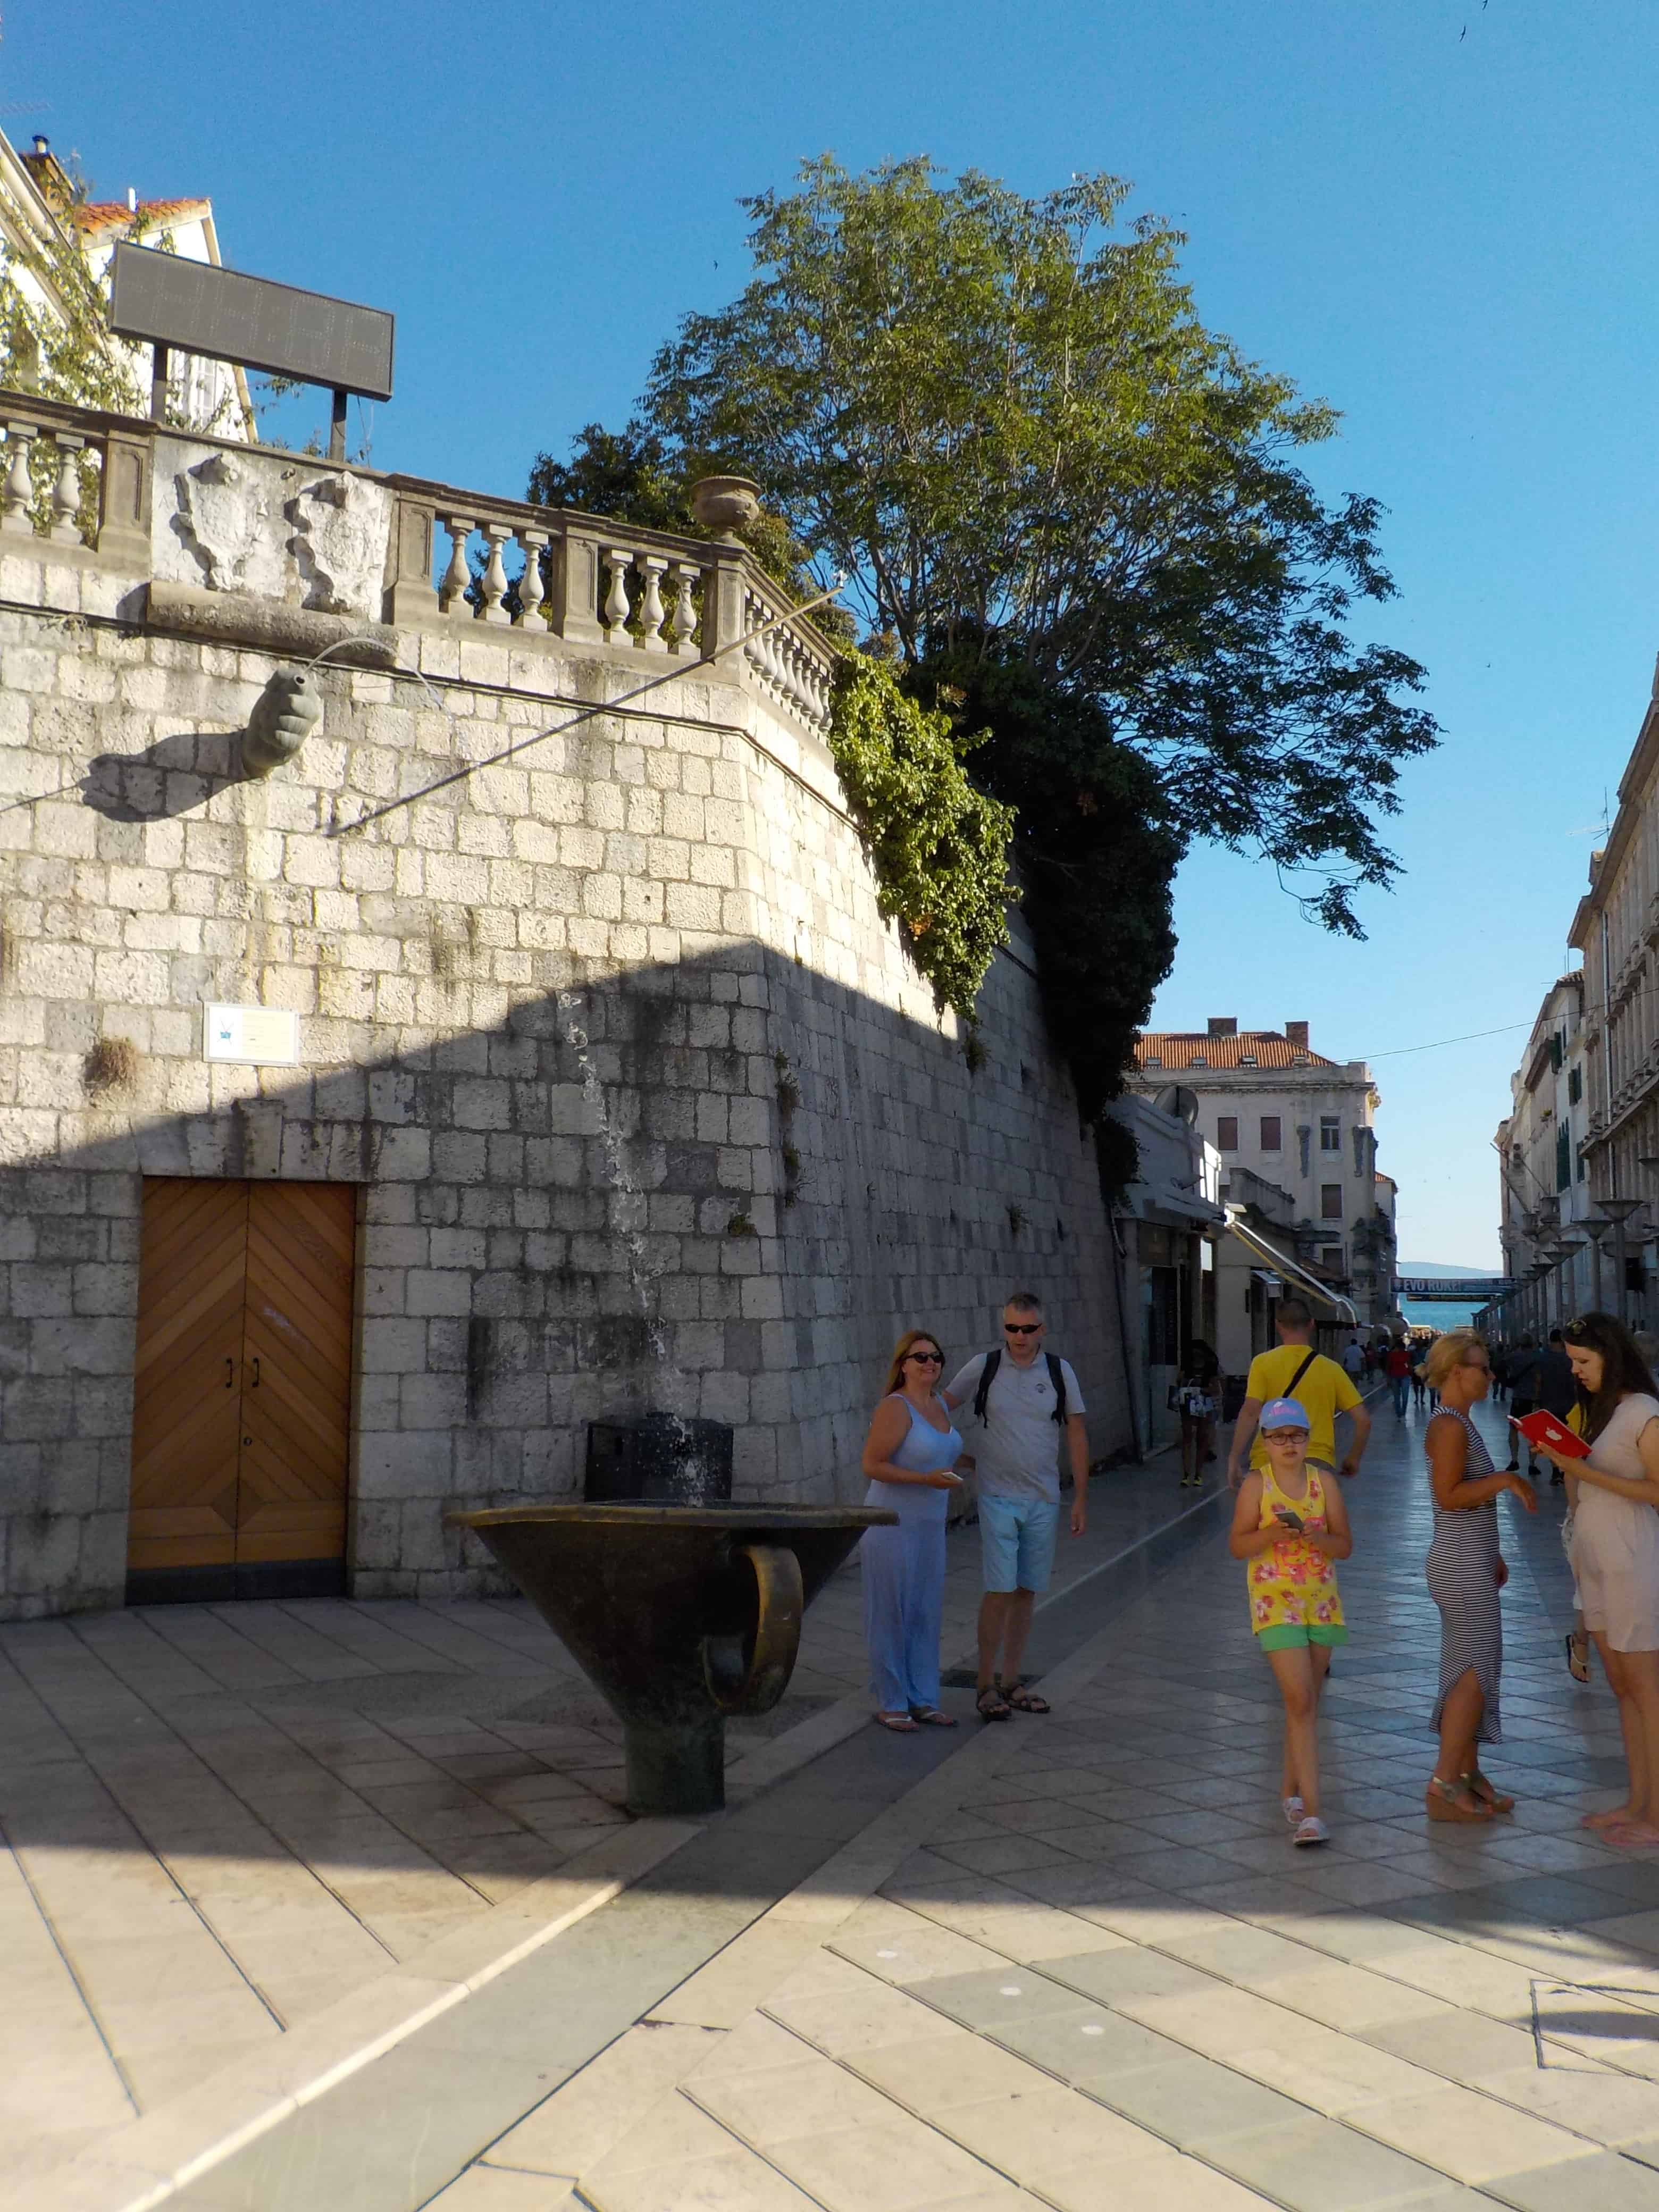 Unique Fountain in Split Croatia